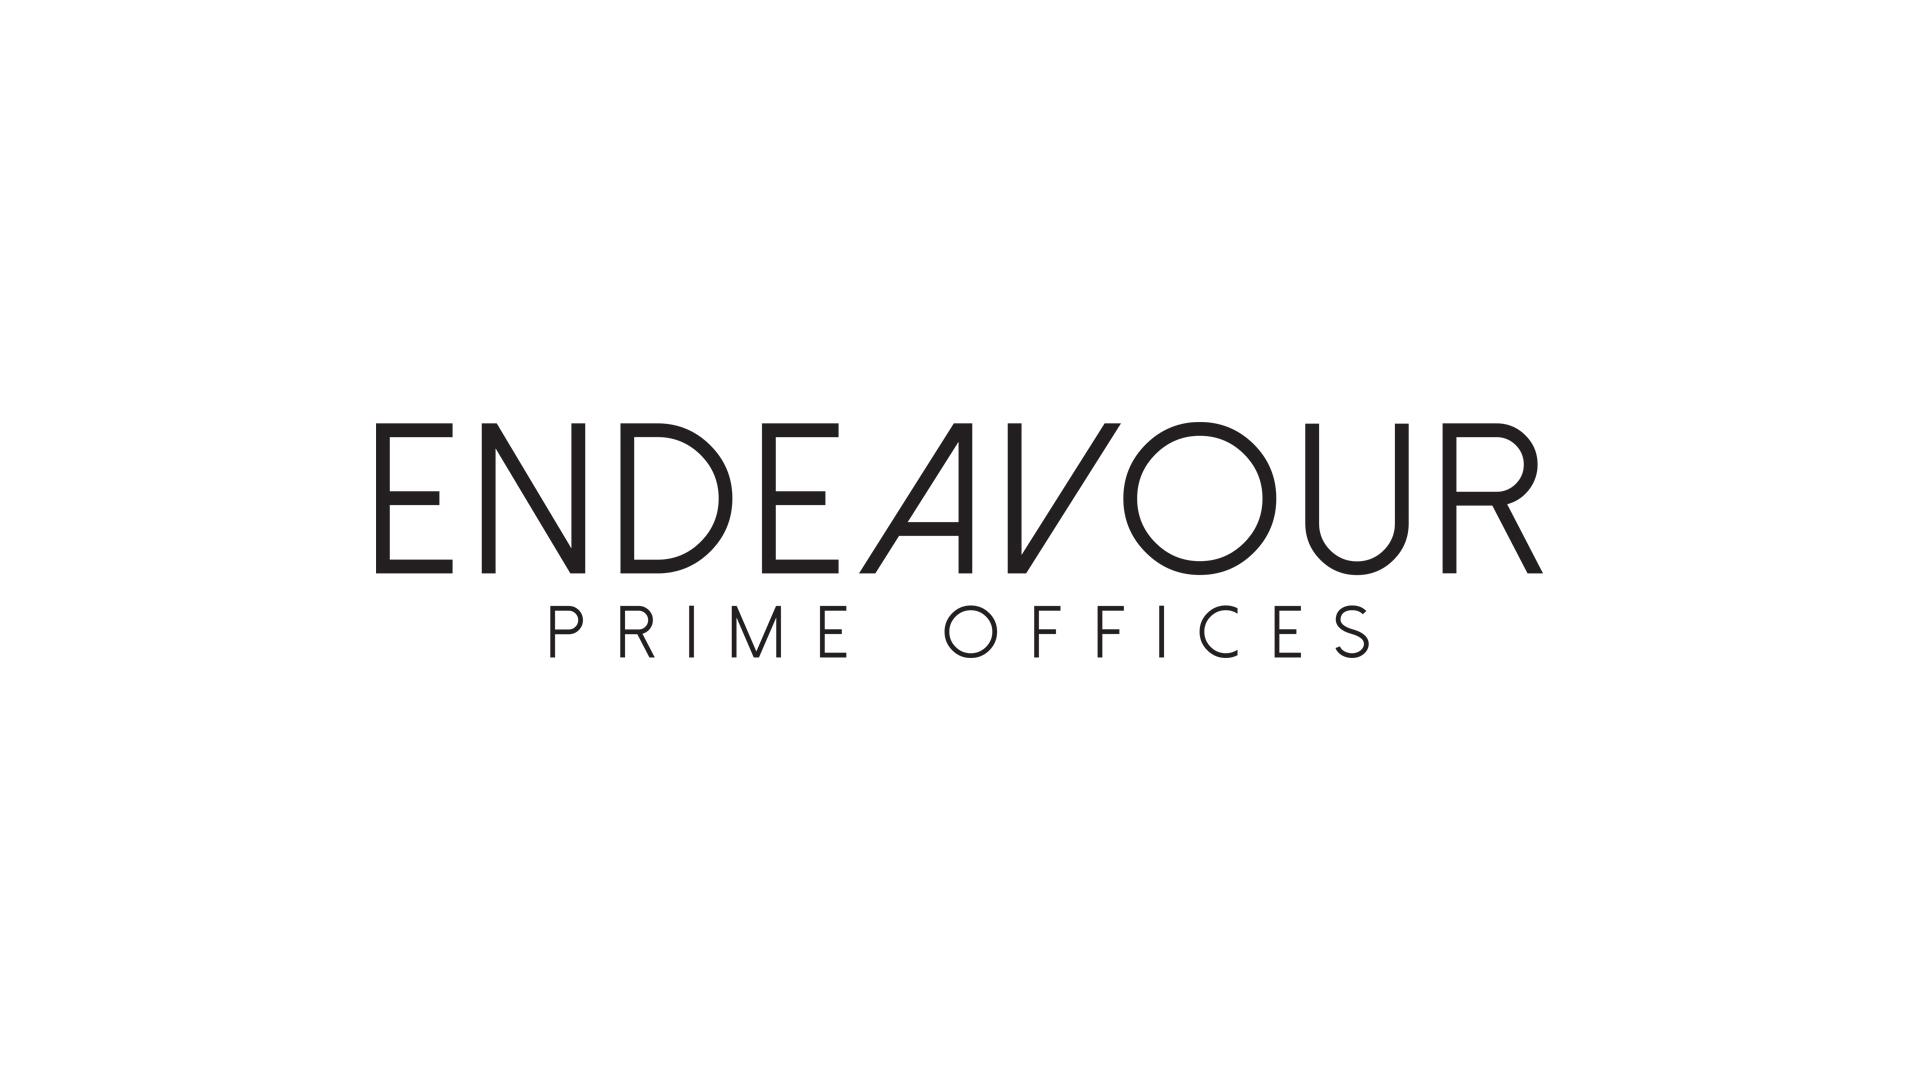 Endeavour Prime Offices